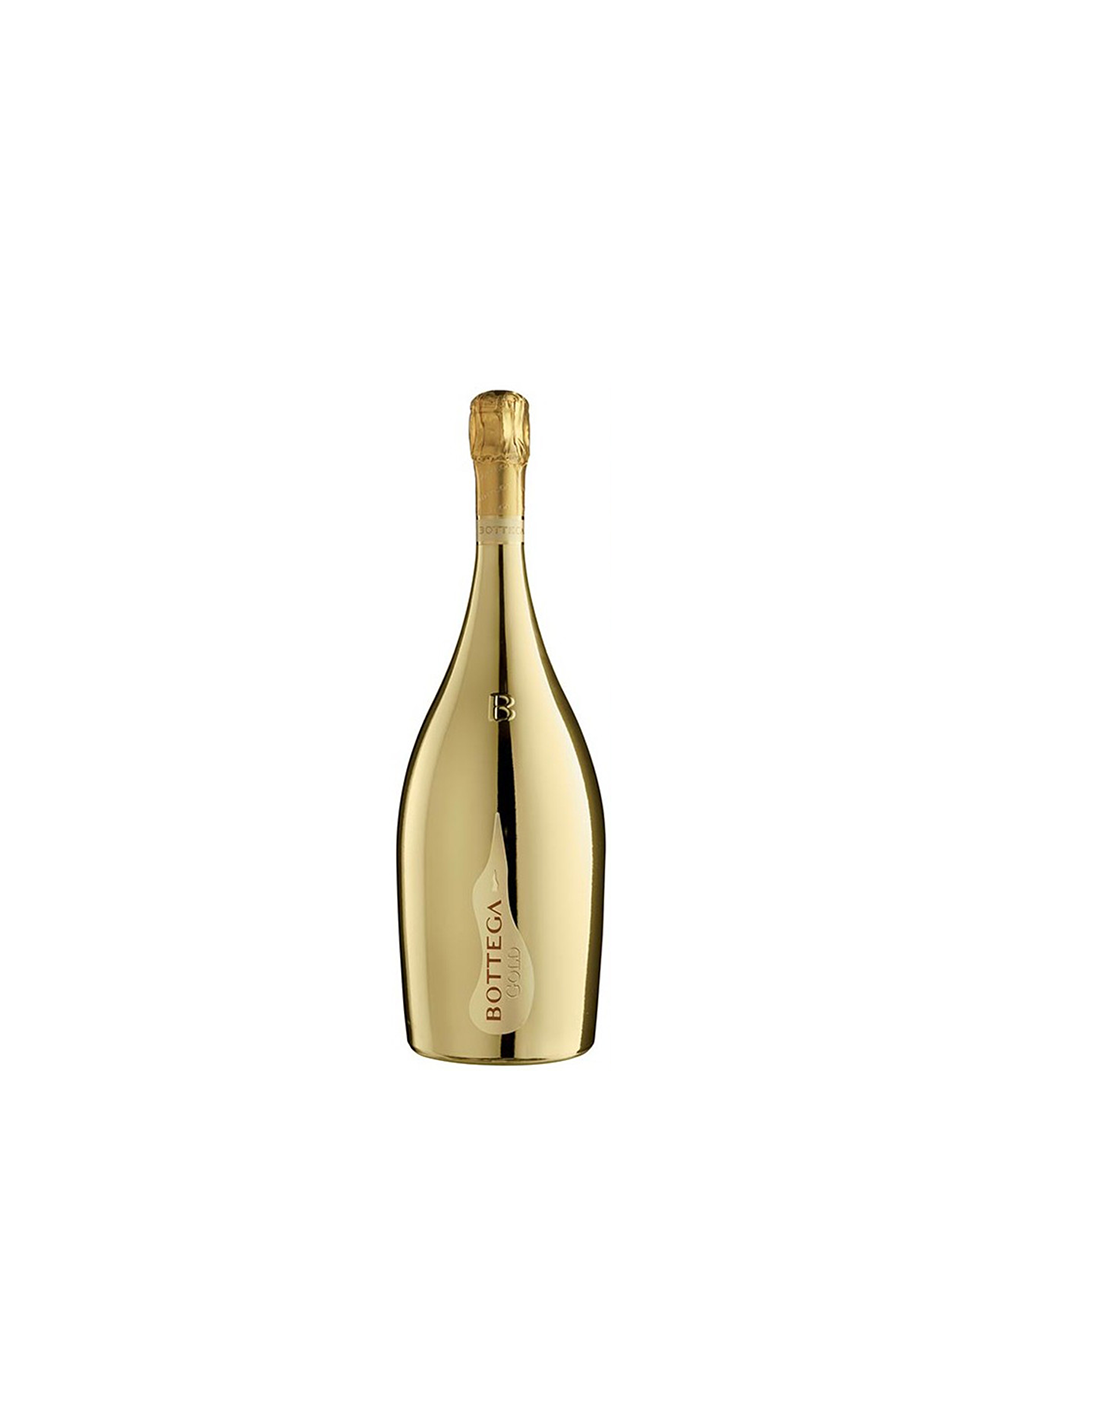 Vin Prosecco Bottega Gold, 1.5L, 11% alc., Italia alcooldiscount.ro